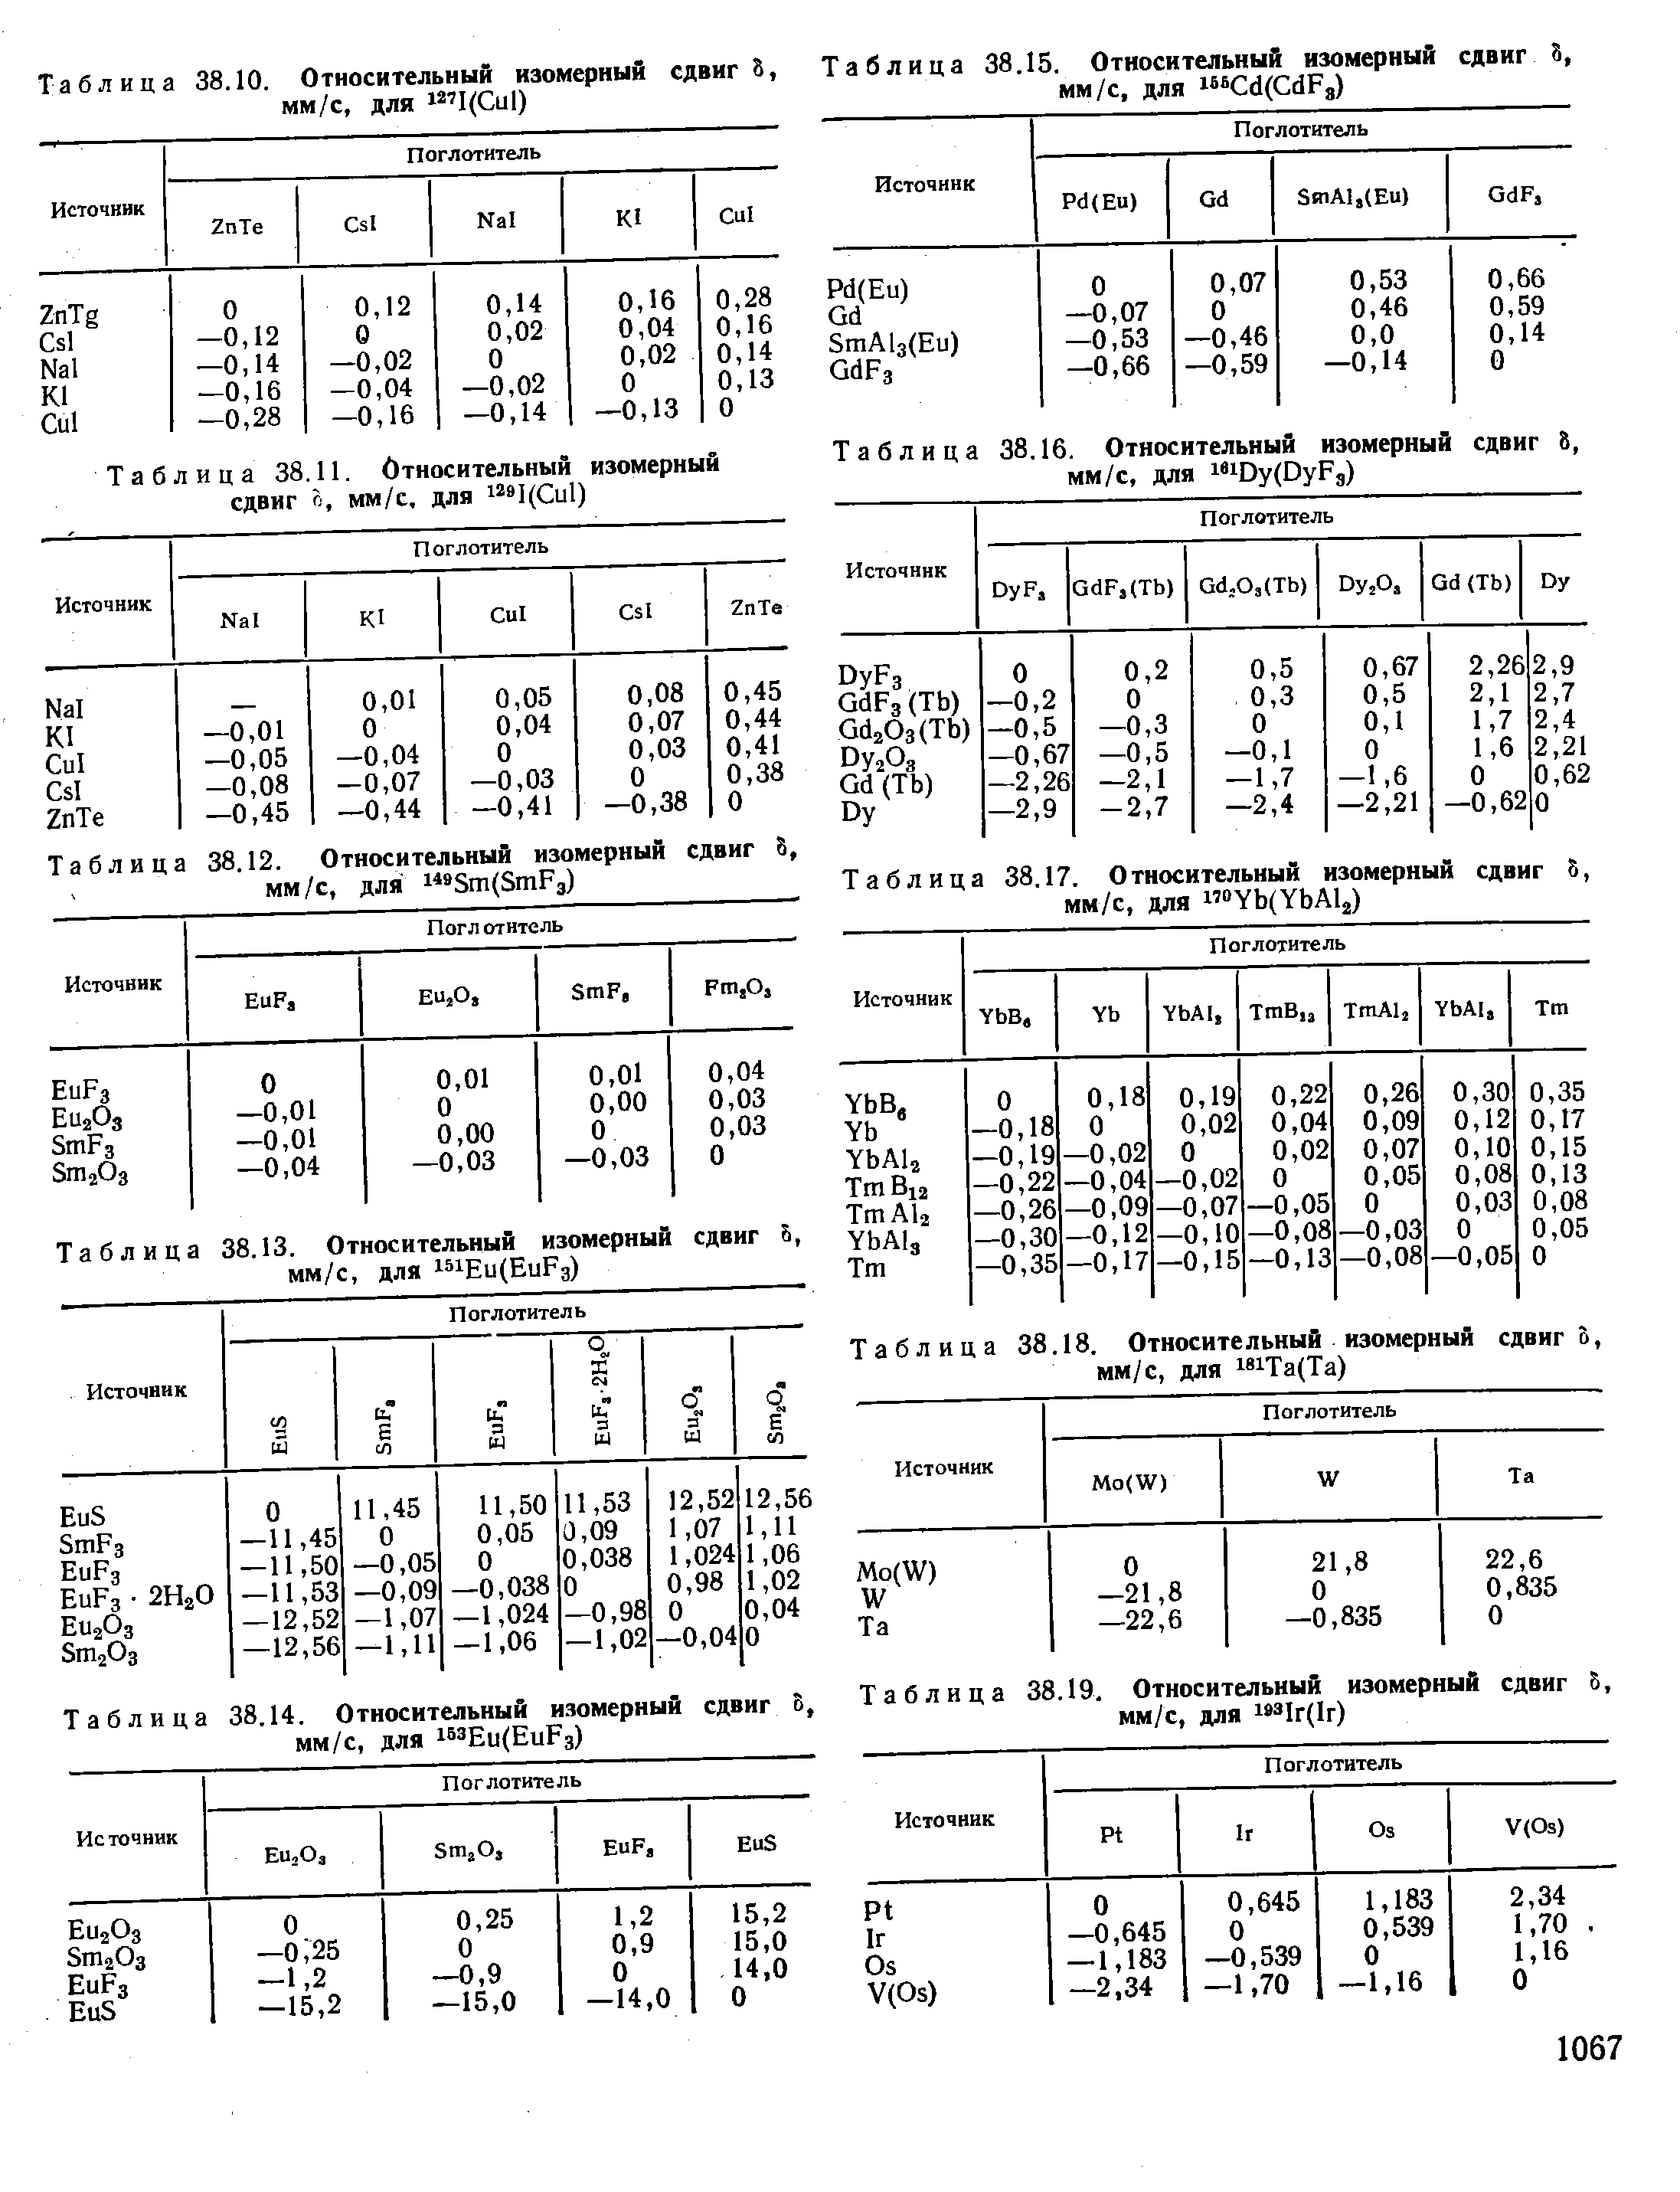 Таблица 38.14. Относительный изомерный сдвиг 8, мм/с, для 1 Еи(ЕиРз)
